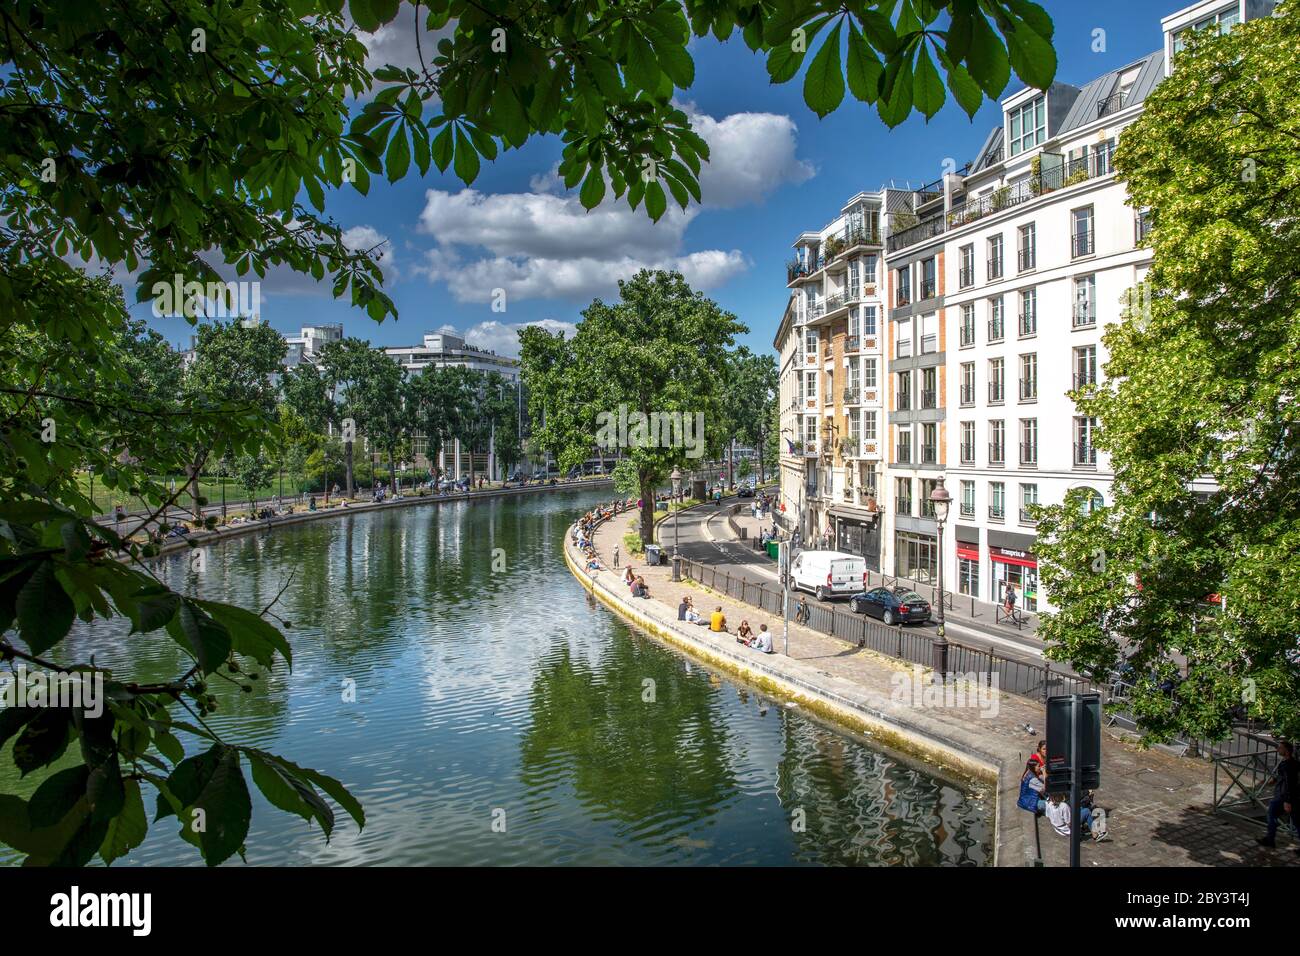 París, Francia - 25 de mayo de 2020: Vista de la calle del canal de San Martín, situado en la ciudad de luz francesa, capital de Francia, París Foto de stock